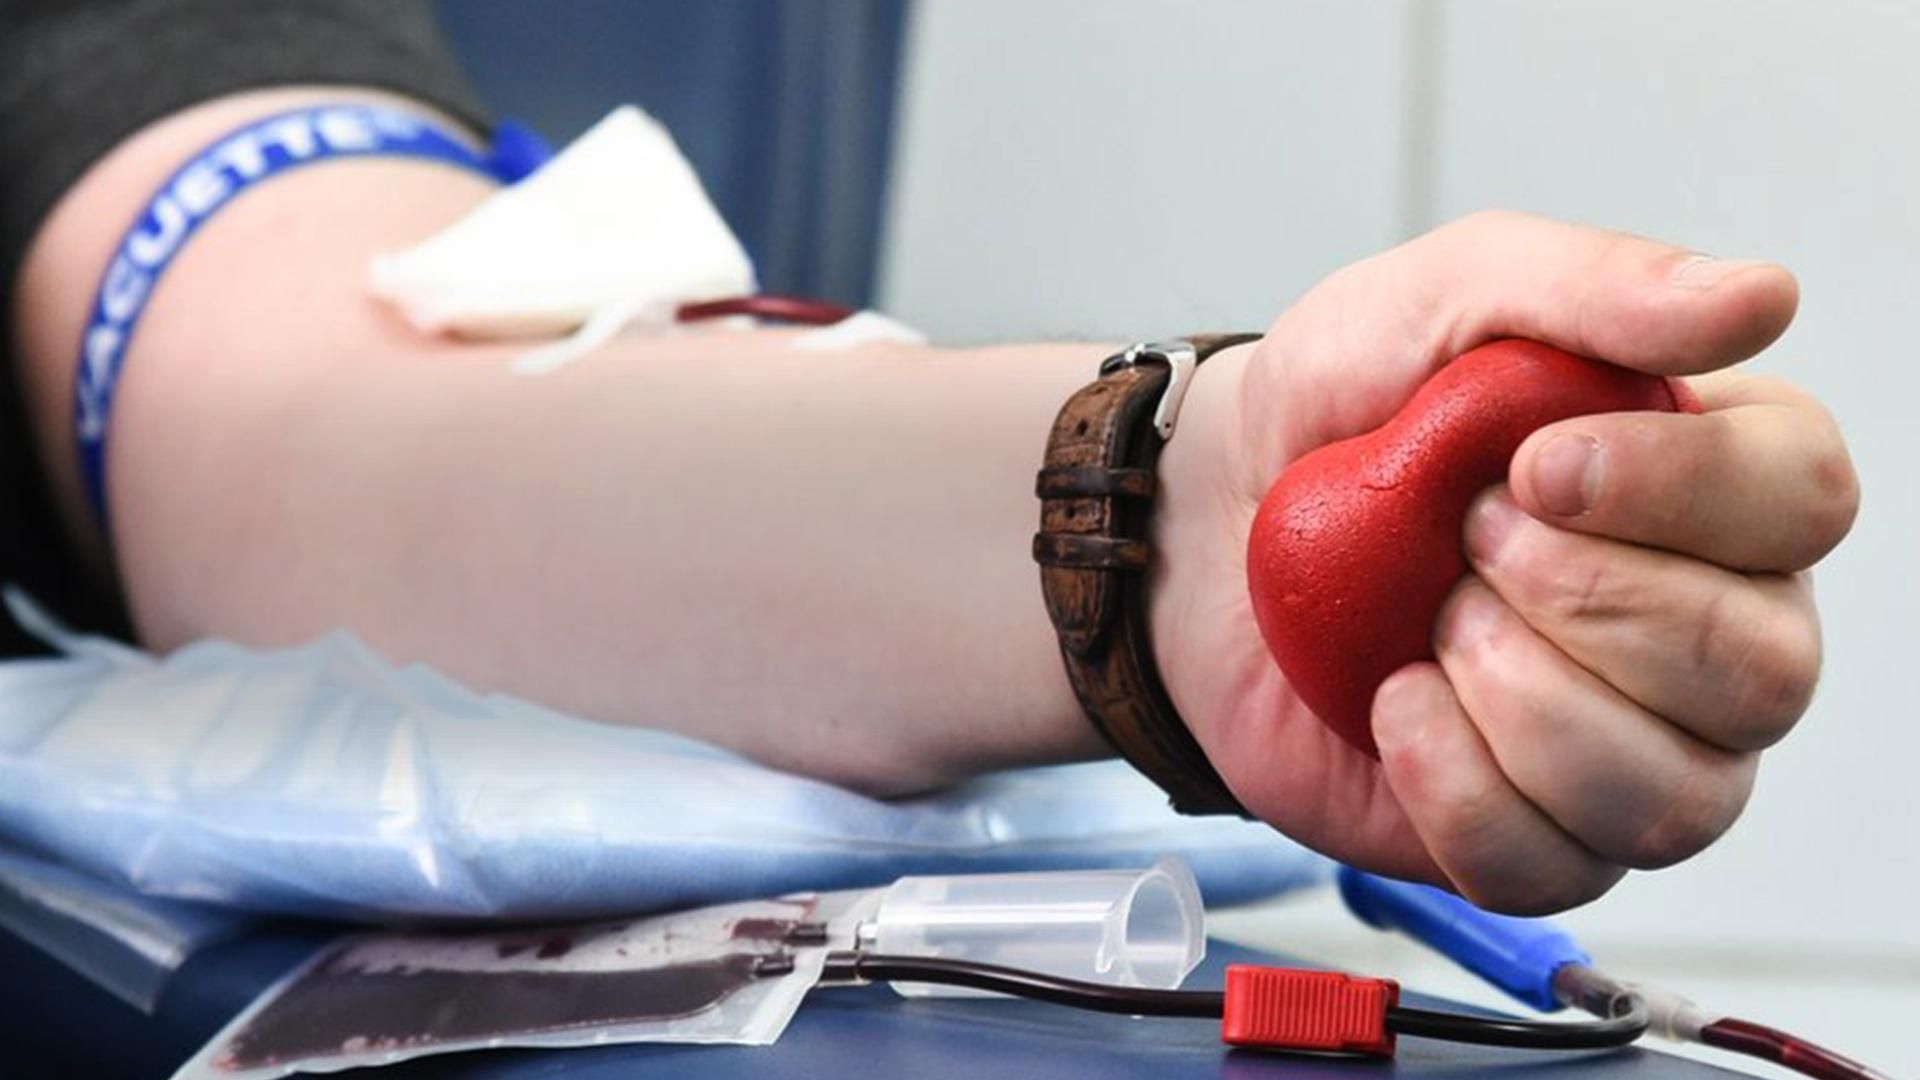 Украинским геям и лесбиянкам разрешили быть донорами крови, – правозащитники